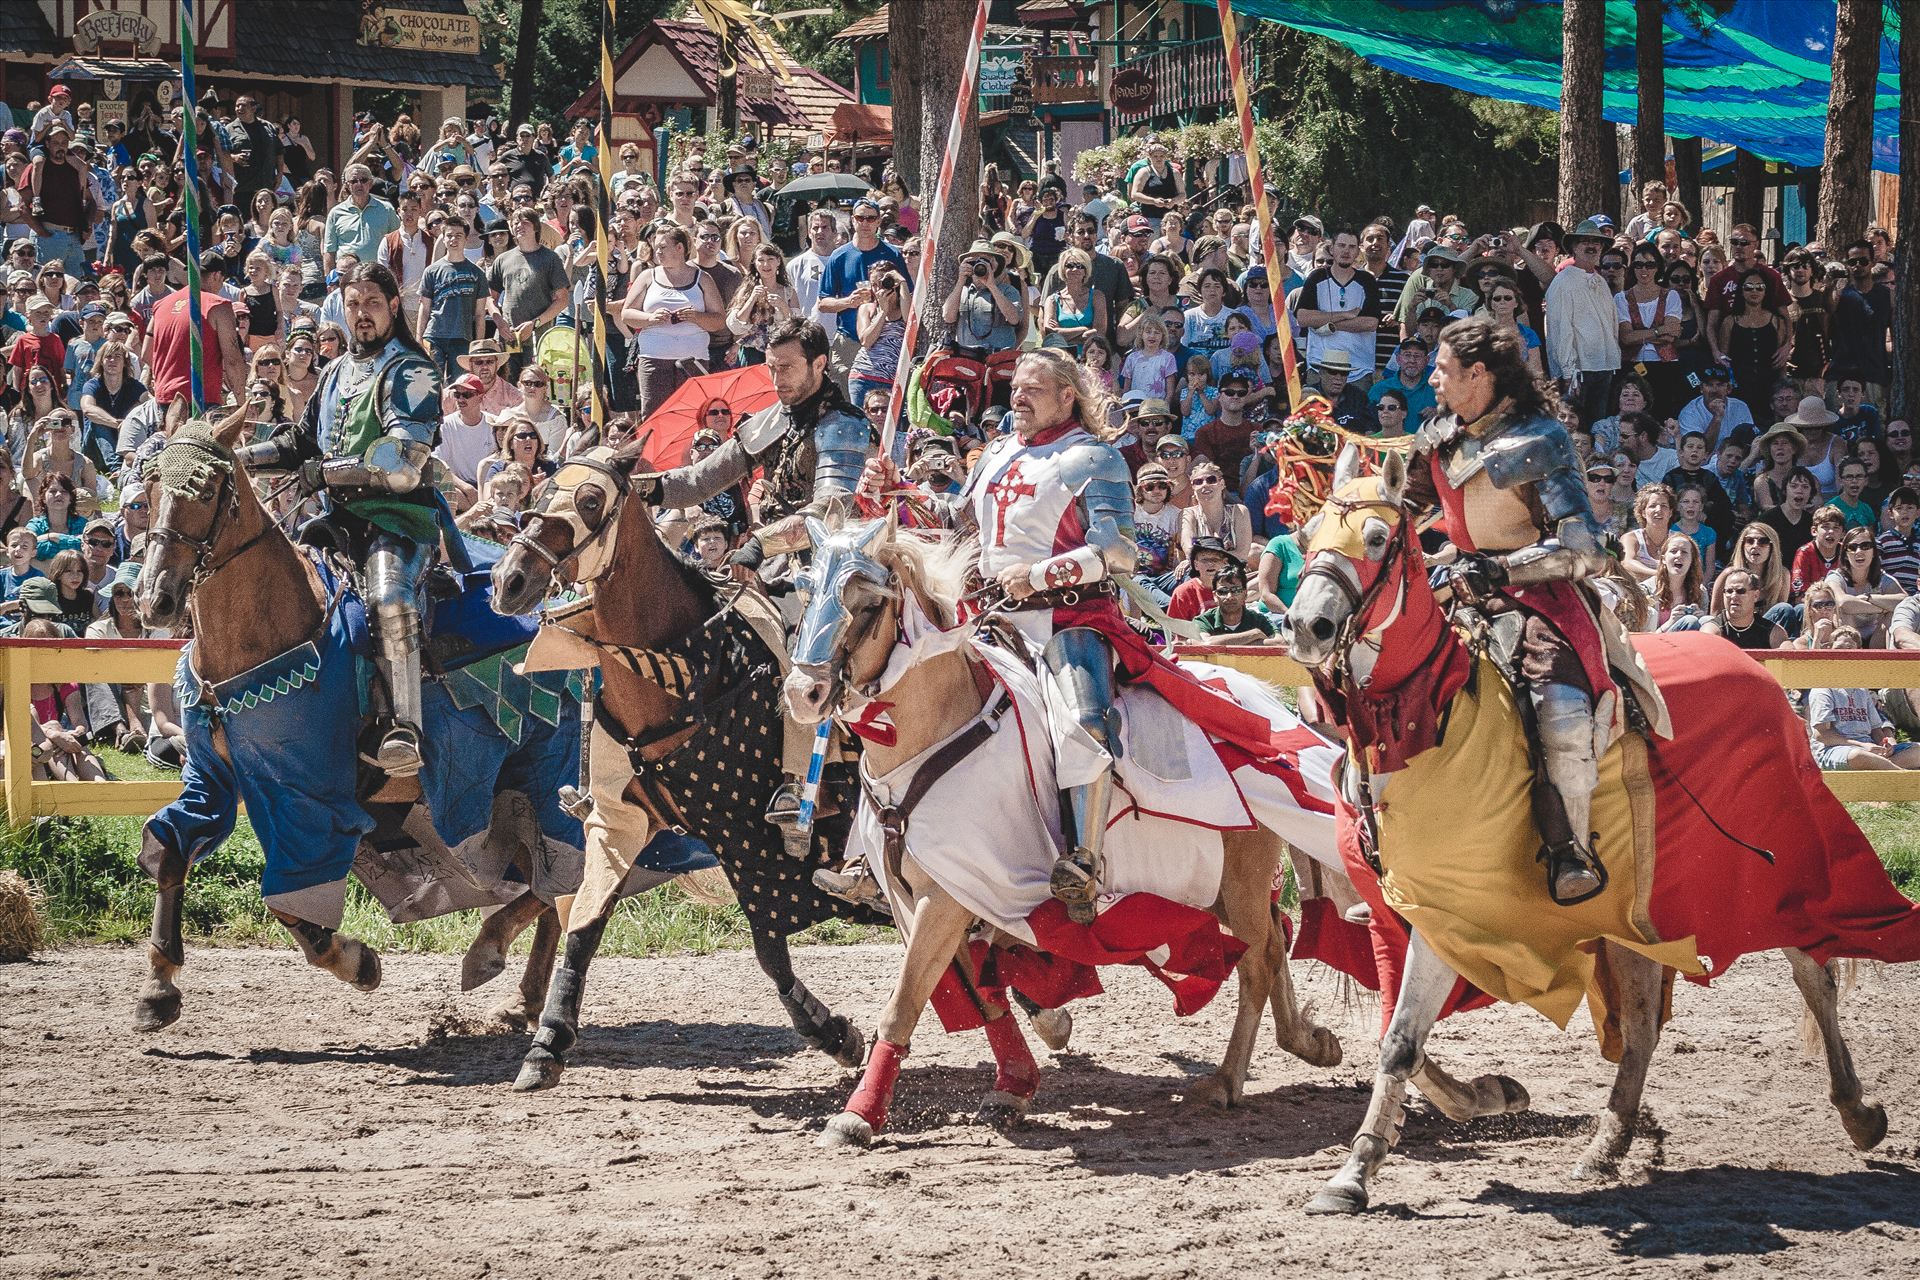 Renaissance Faire - The annual Renaissance Faire in Larkspur, Colorado by Scott Smith Photos